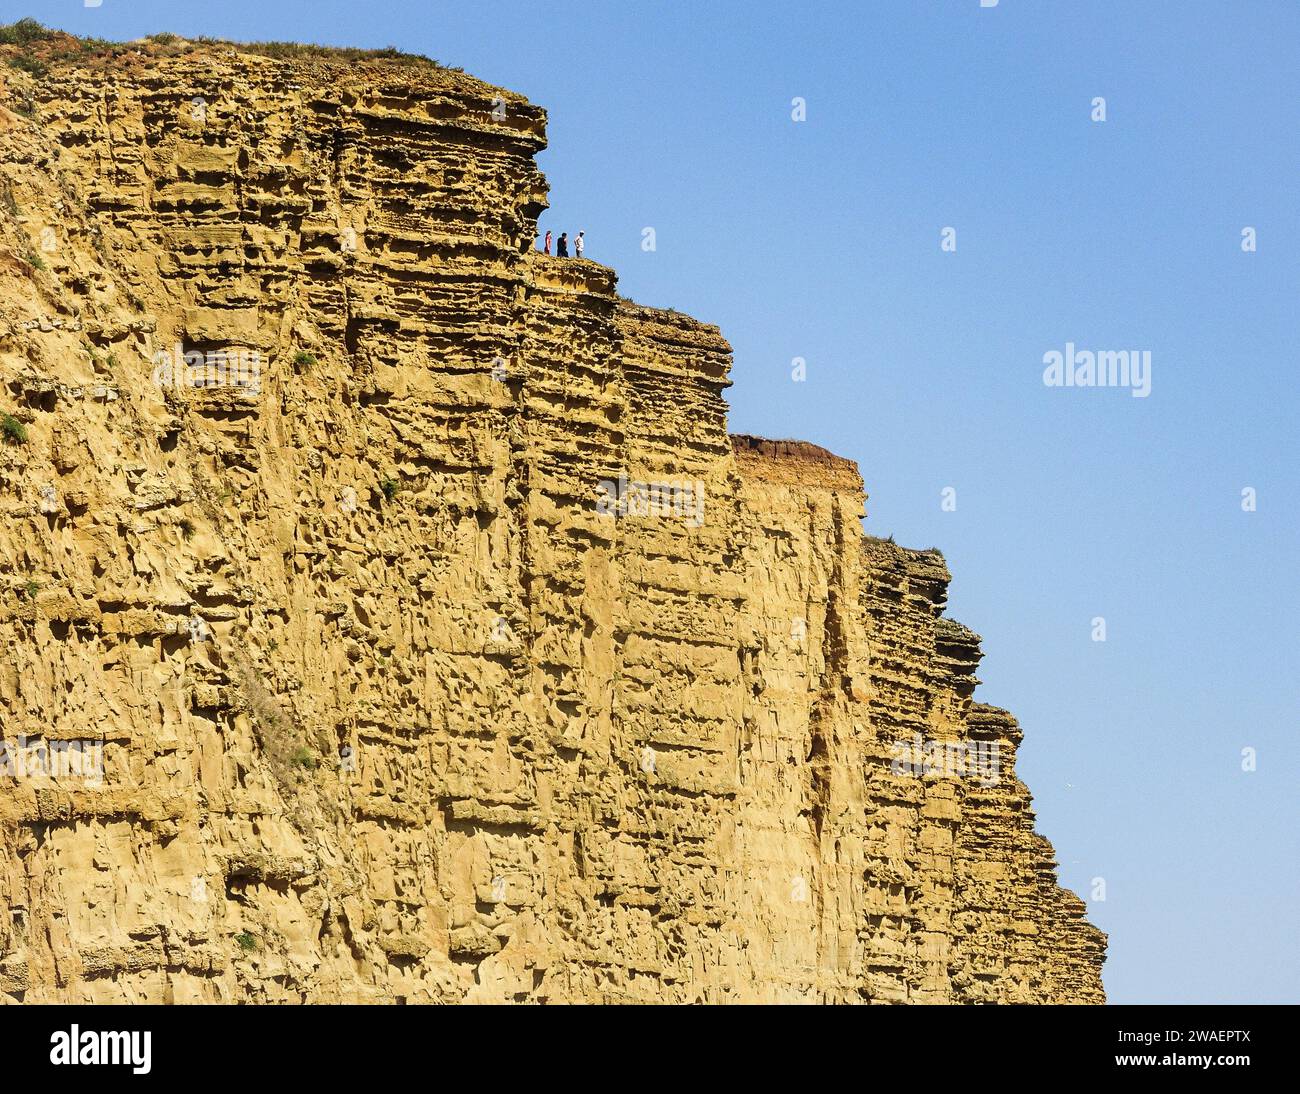 Un groupe de personnes diverses se dresse au sommet d'une majestueuse falaise rocheuse profitant de la vue sur l'horizon magnifique Banque D'Images